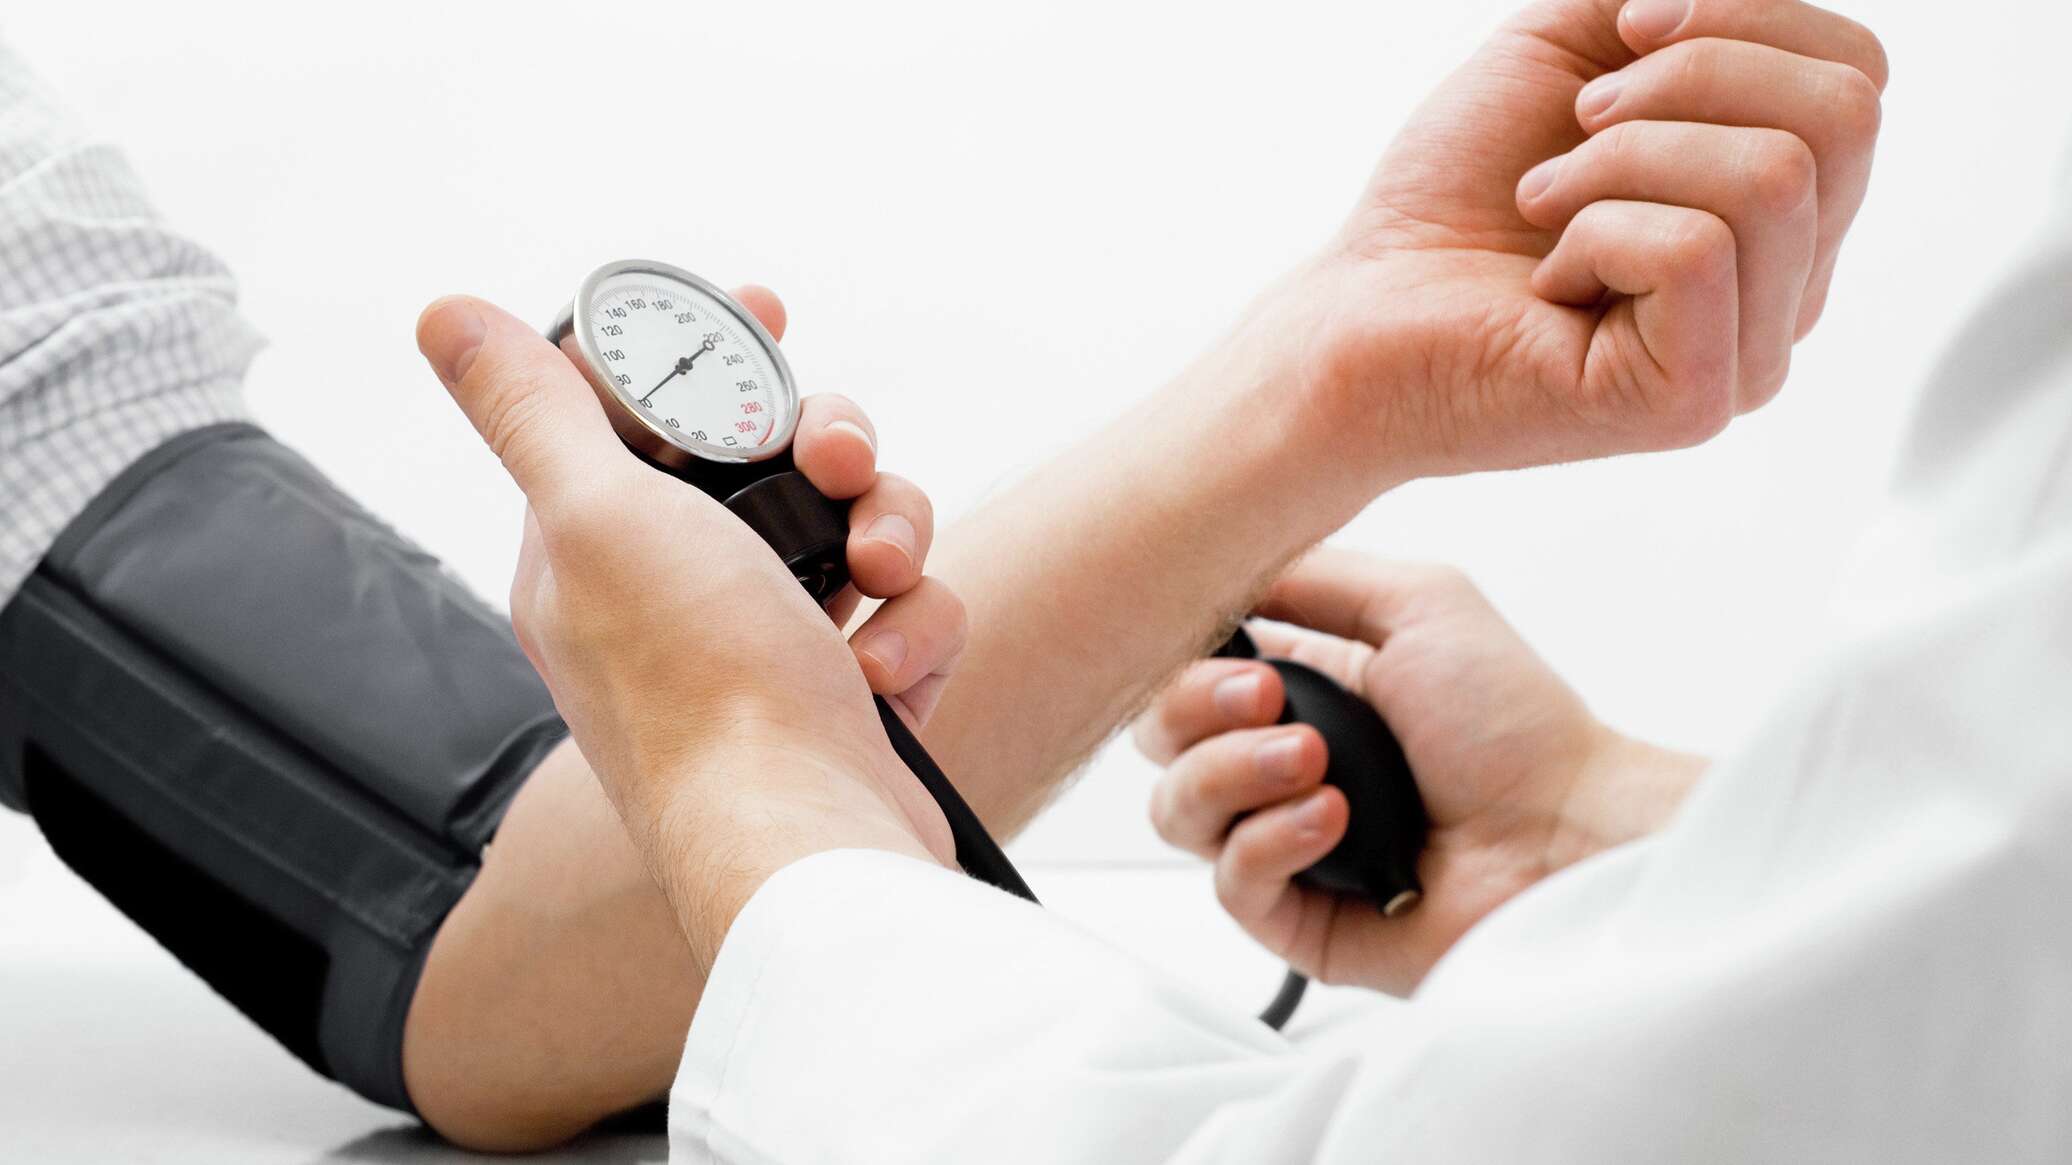 وجدت دراسة وجود صلة بين تقلبات ضغط الدم والخرف